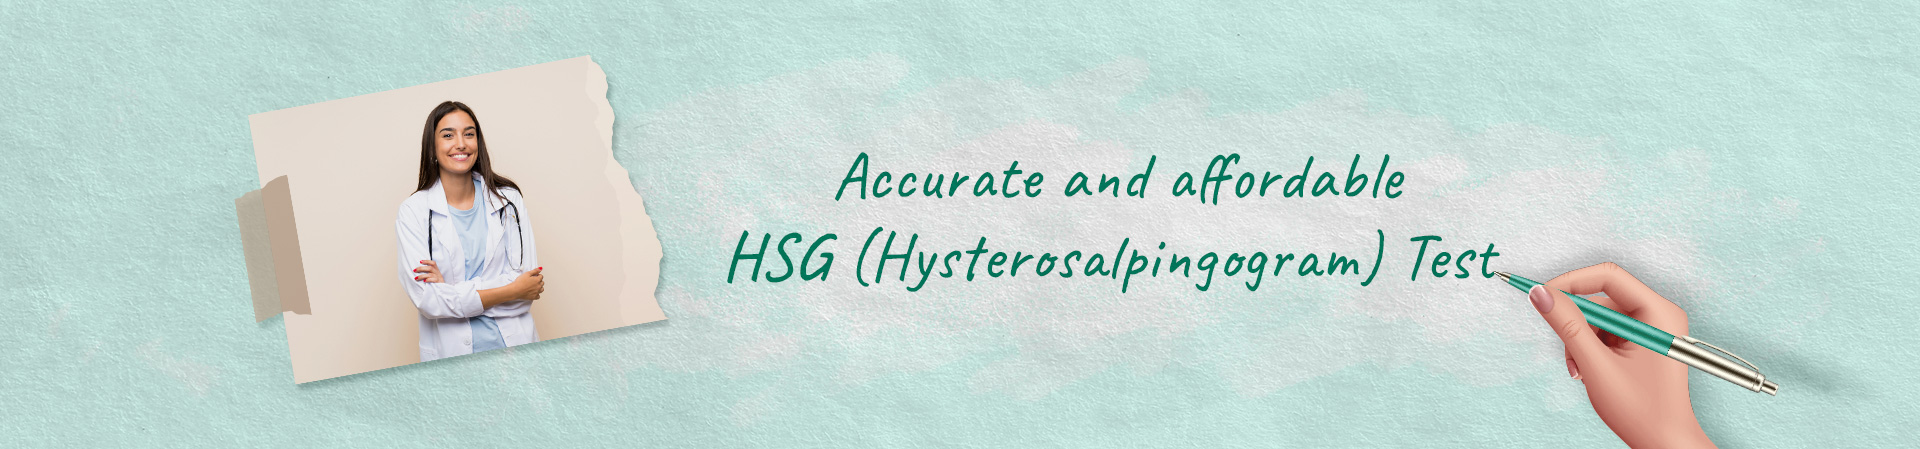 Get HSG Test at Reasonable Cost in Kolkata at AccuHealth Diagnostics